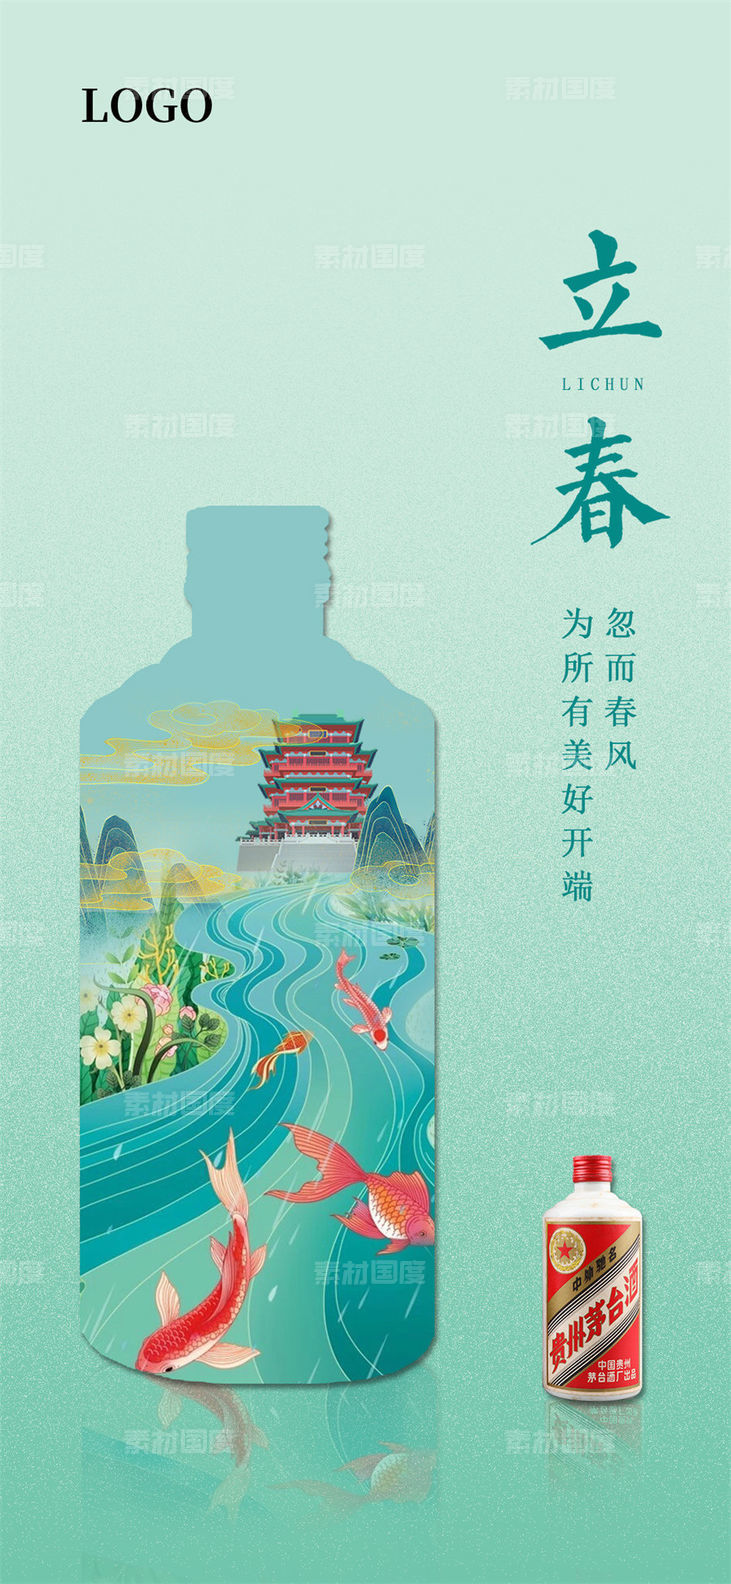 酒类白酒老窖国潮晚会酱香活动宣传节假推广营销海报